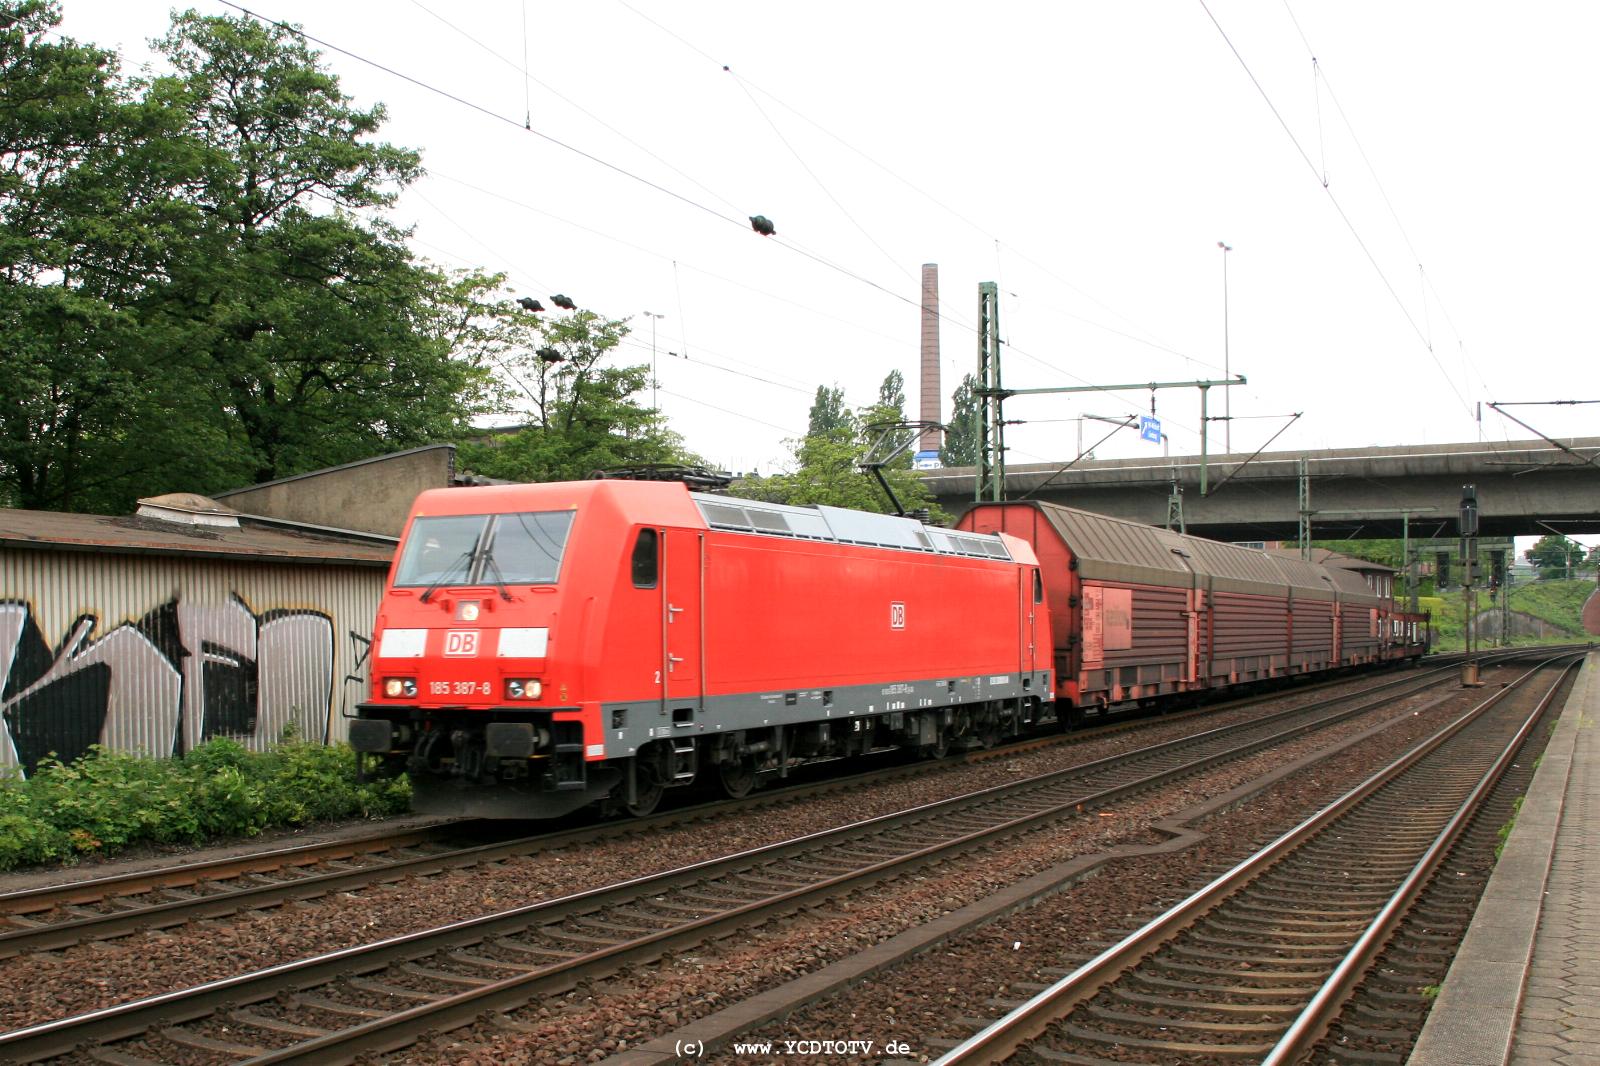  Bahnhof Hamburg-Harburg, 18.05.2011, 14:56 185 387-8 Richtung Sden 